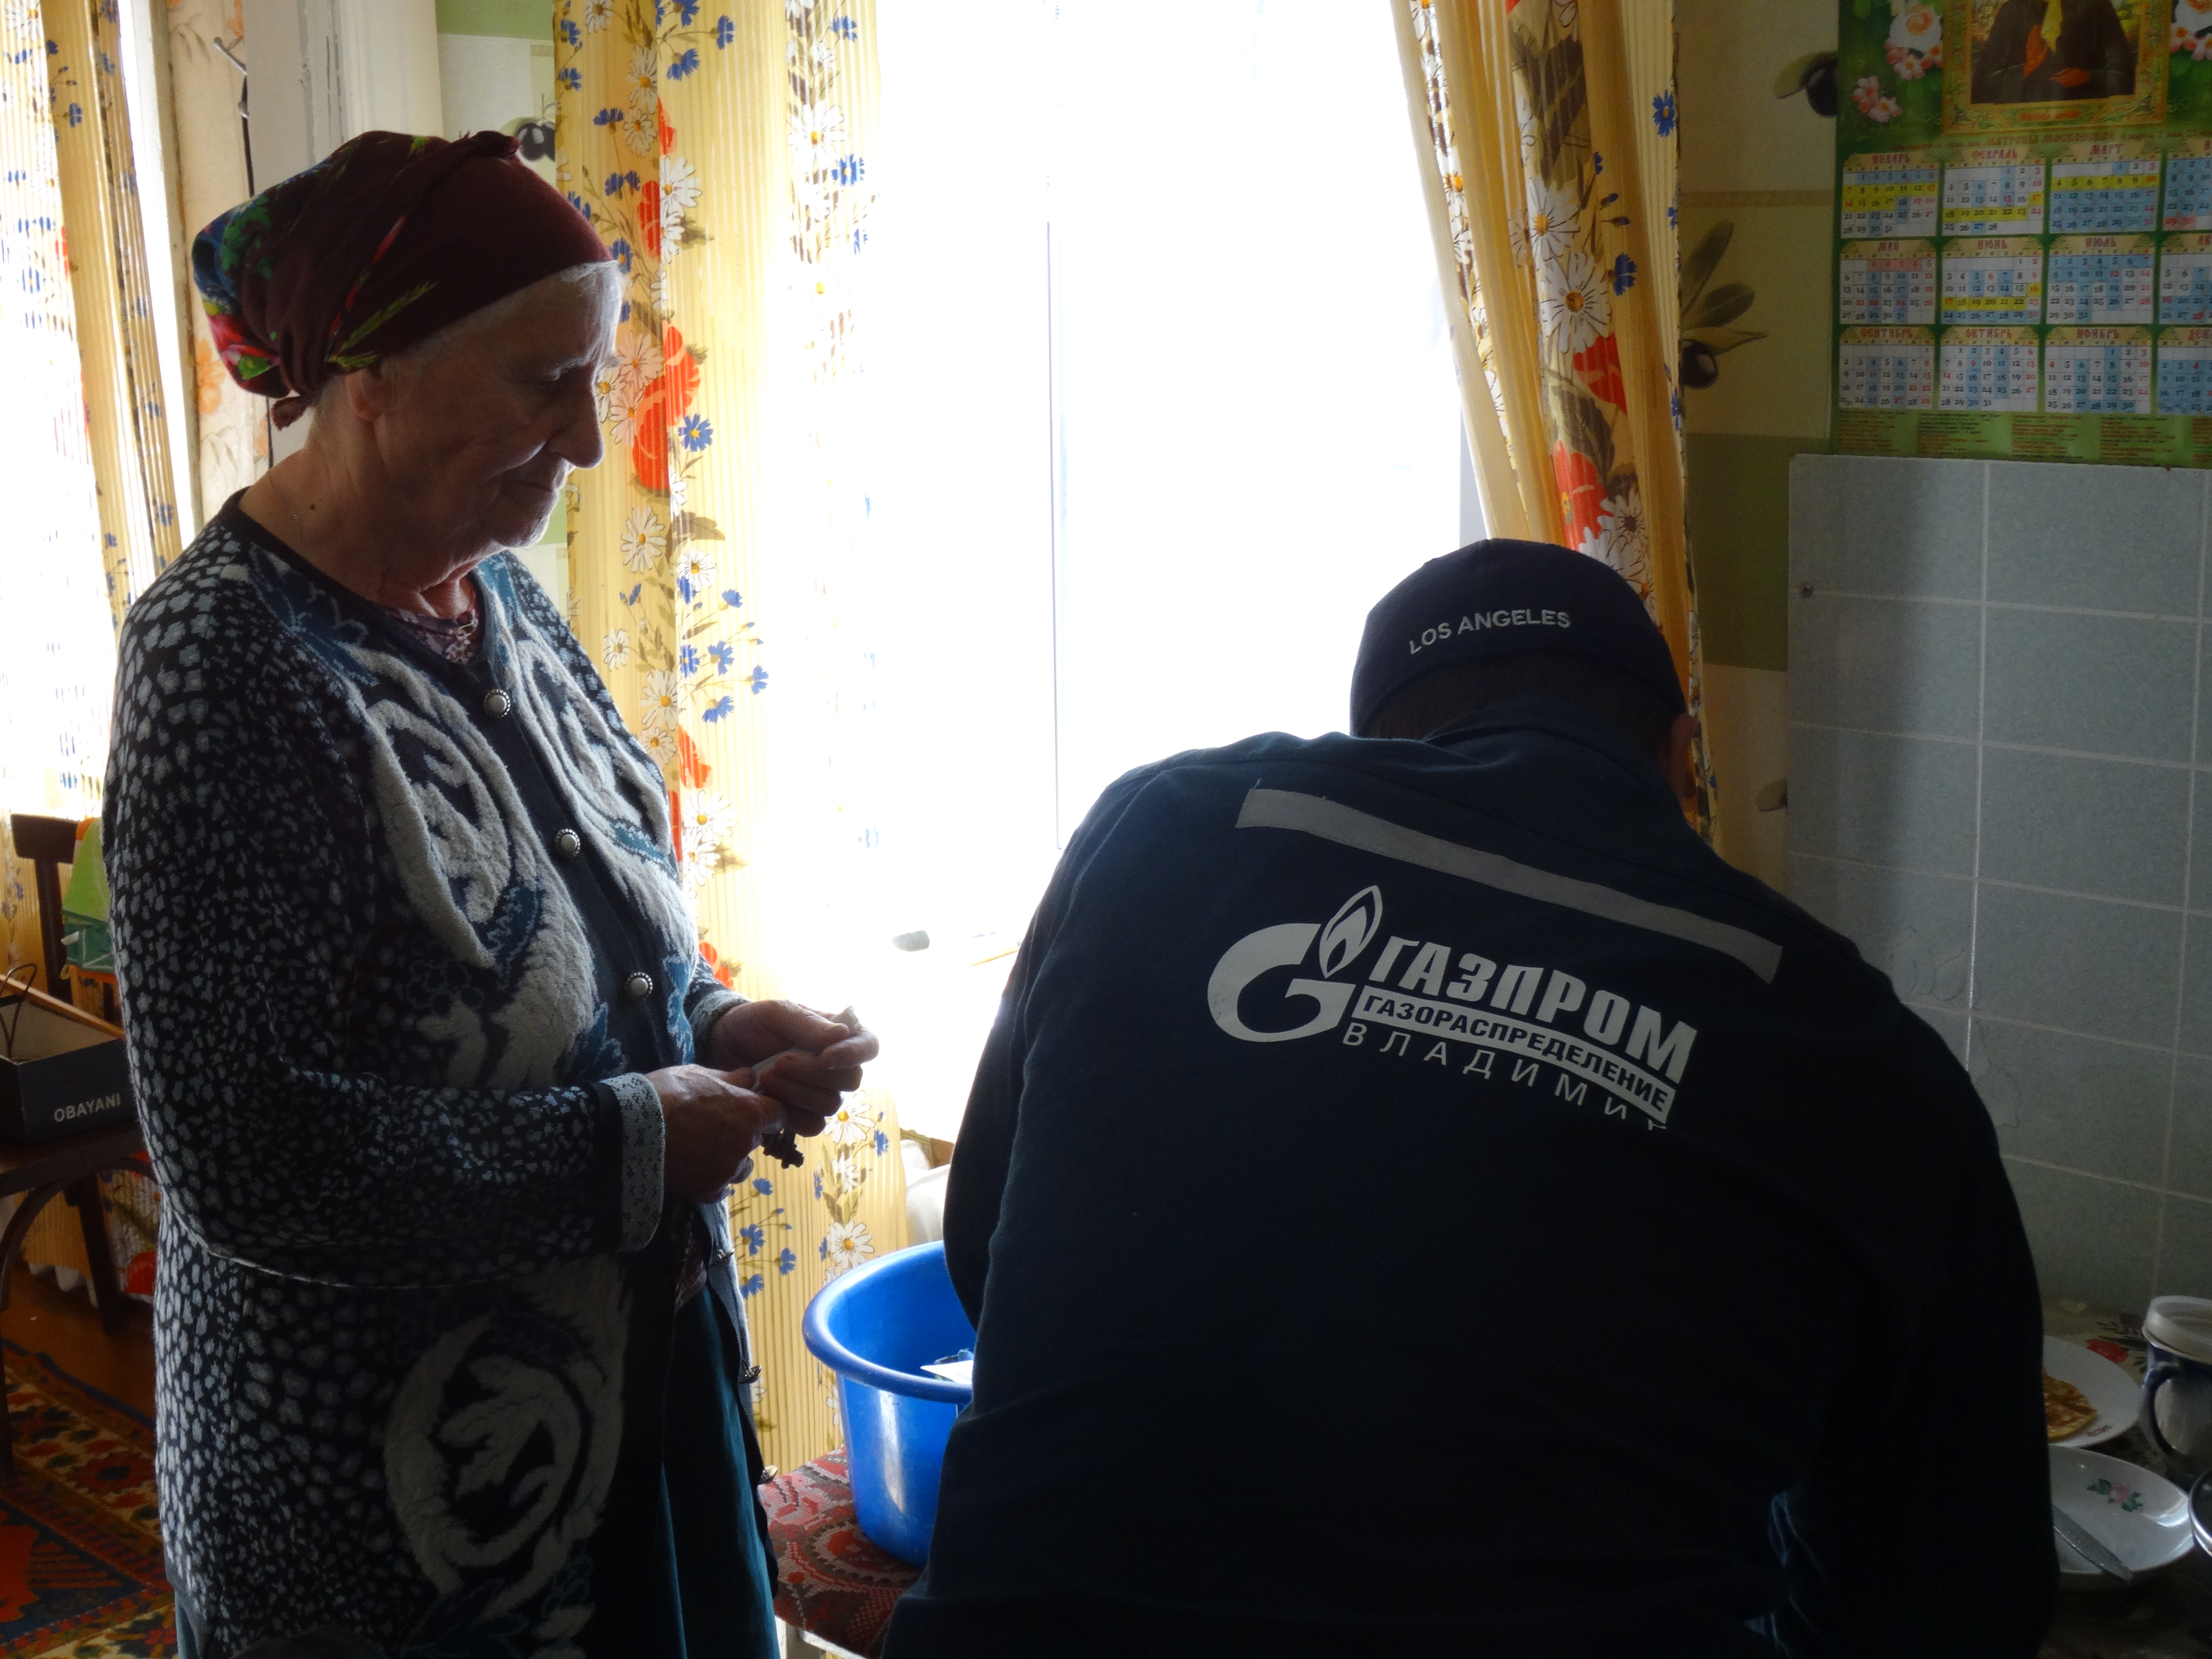 Тамара Трофимовна проживает в доме одна и говорит, что после смерти мужа, а это было пять лет назад, заменила все газовое оборудование